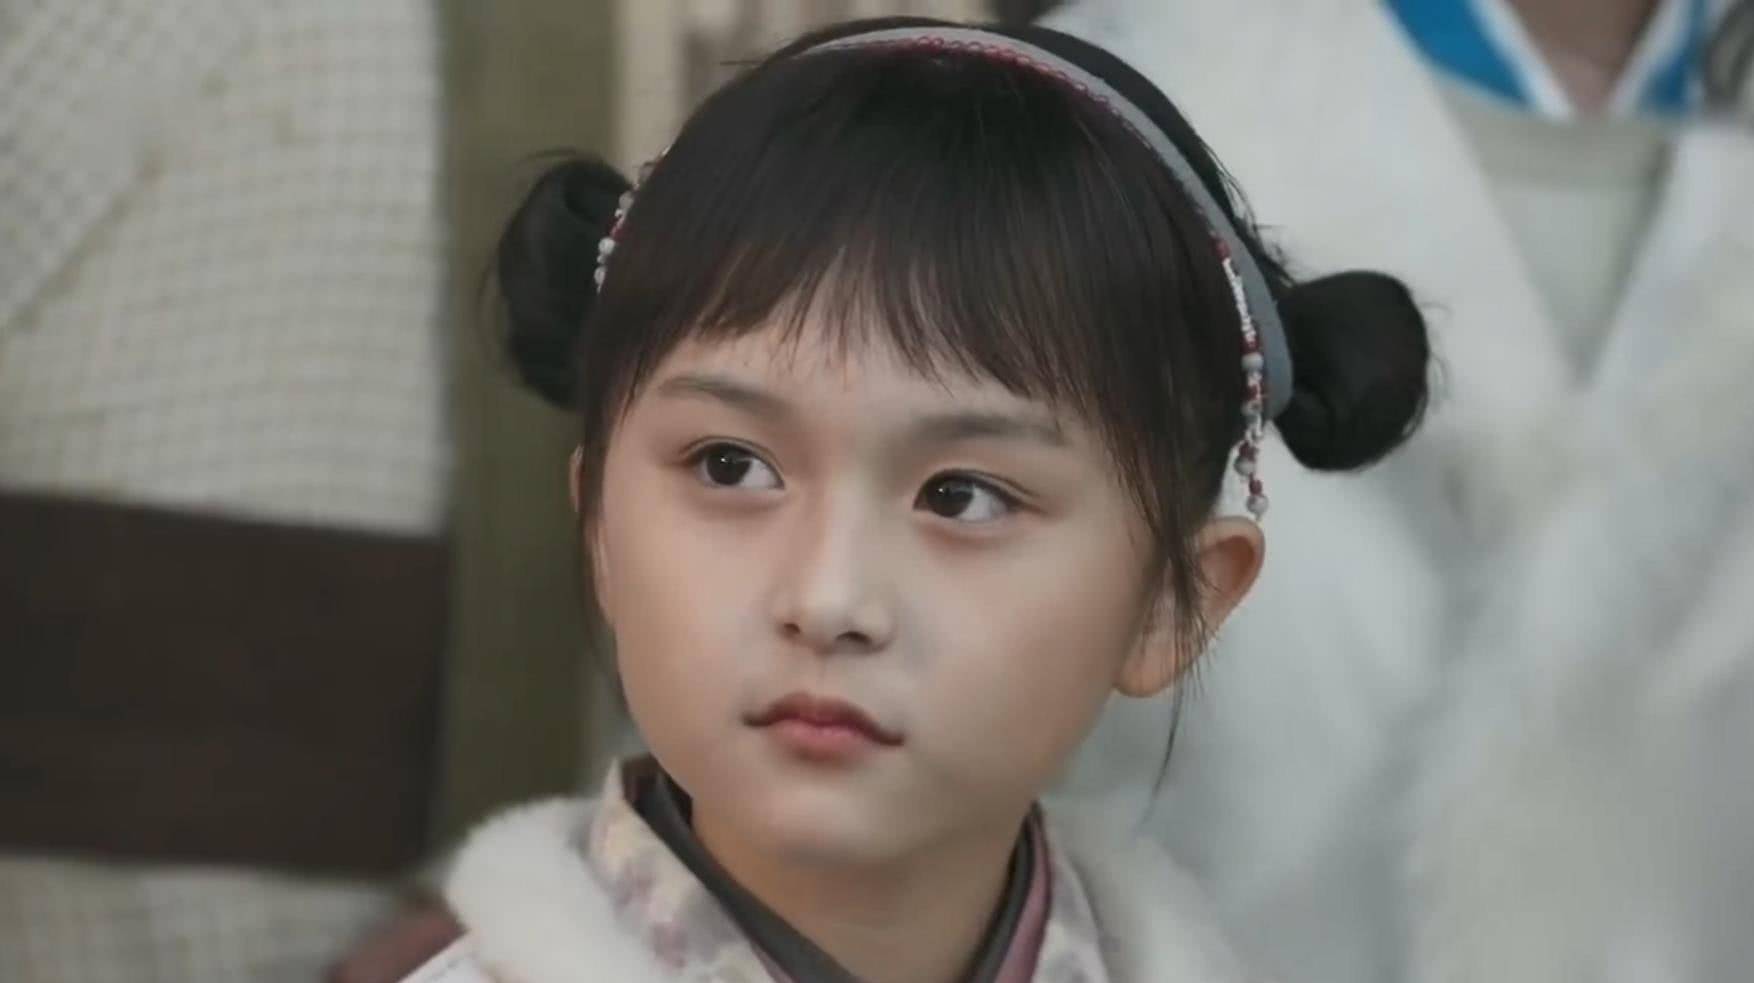 扮演米桃的小演员叫李一情,生于2010年,今年11岁, 2014年出演赵薇的